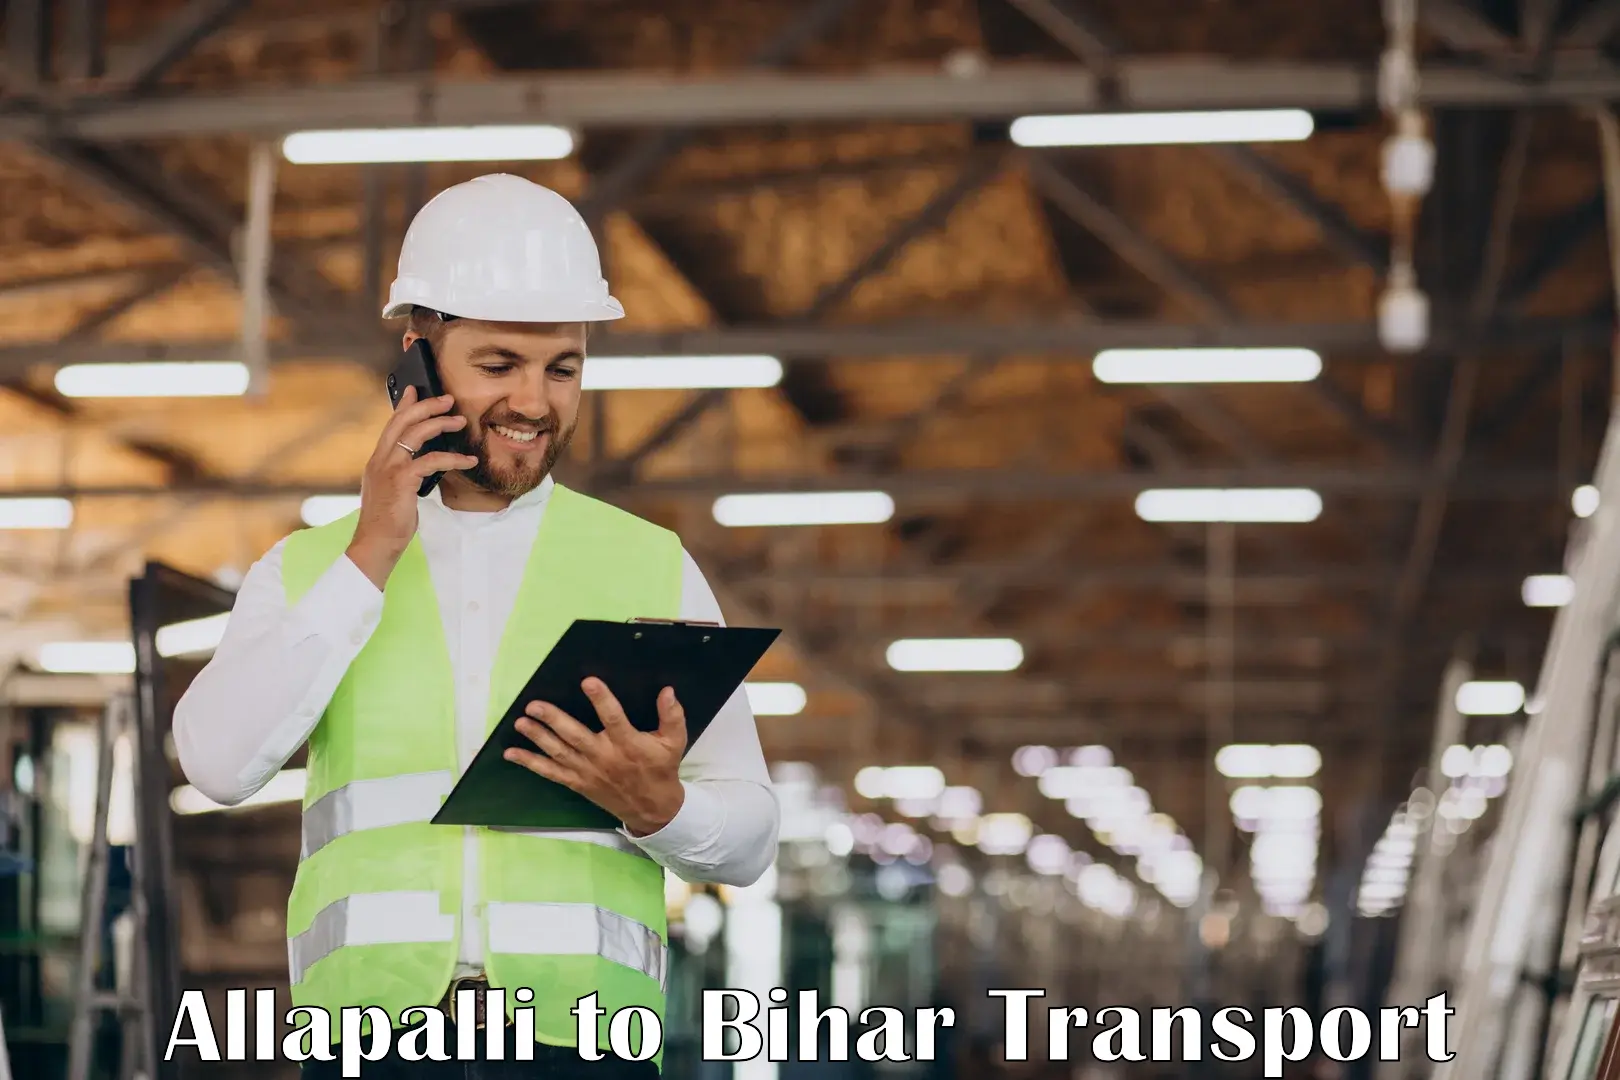 Nearest transport service Allapalli to Bakhtiarpur